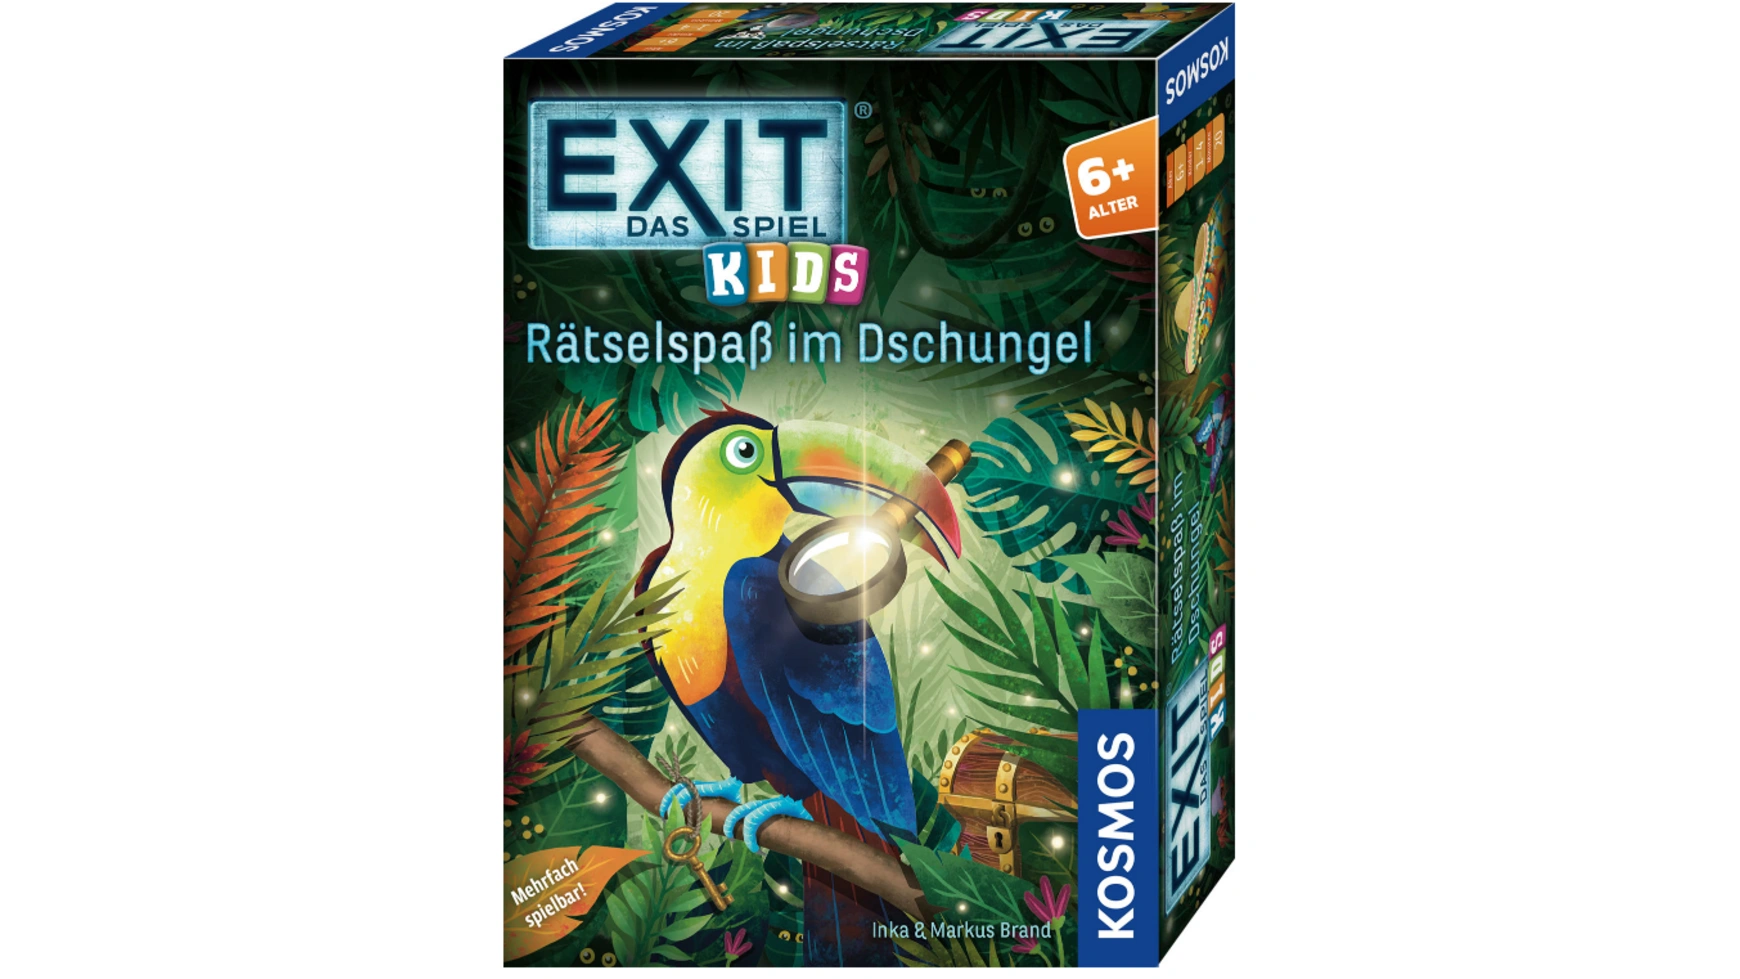 Exit игра дети: головоломка в джунглях Kosmos